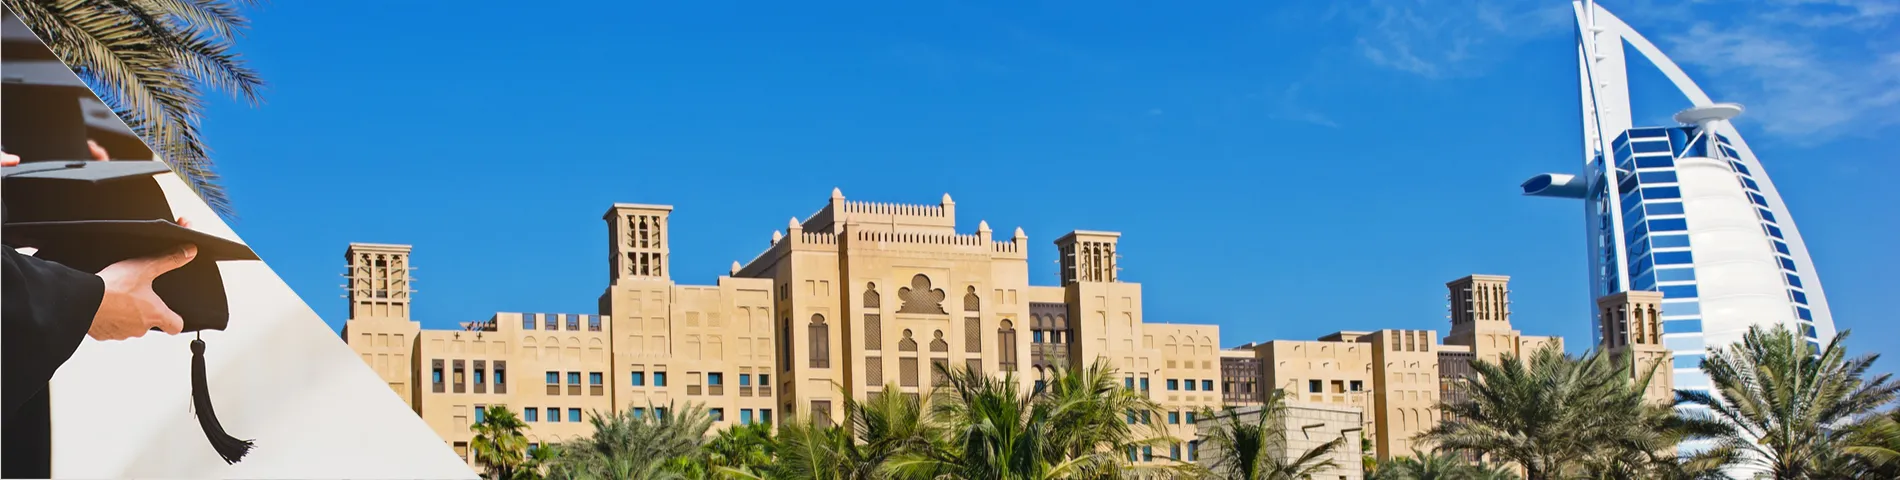 United Arab Emirates - University